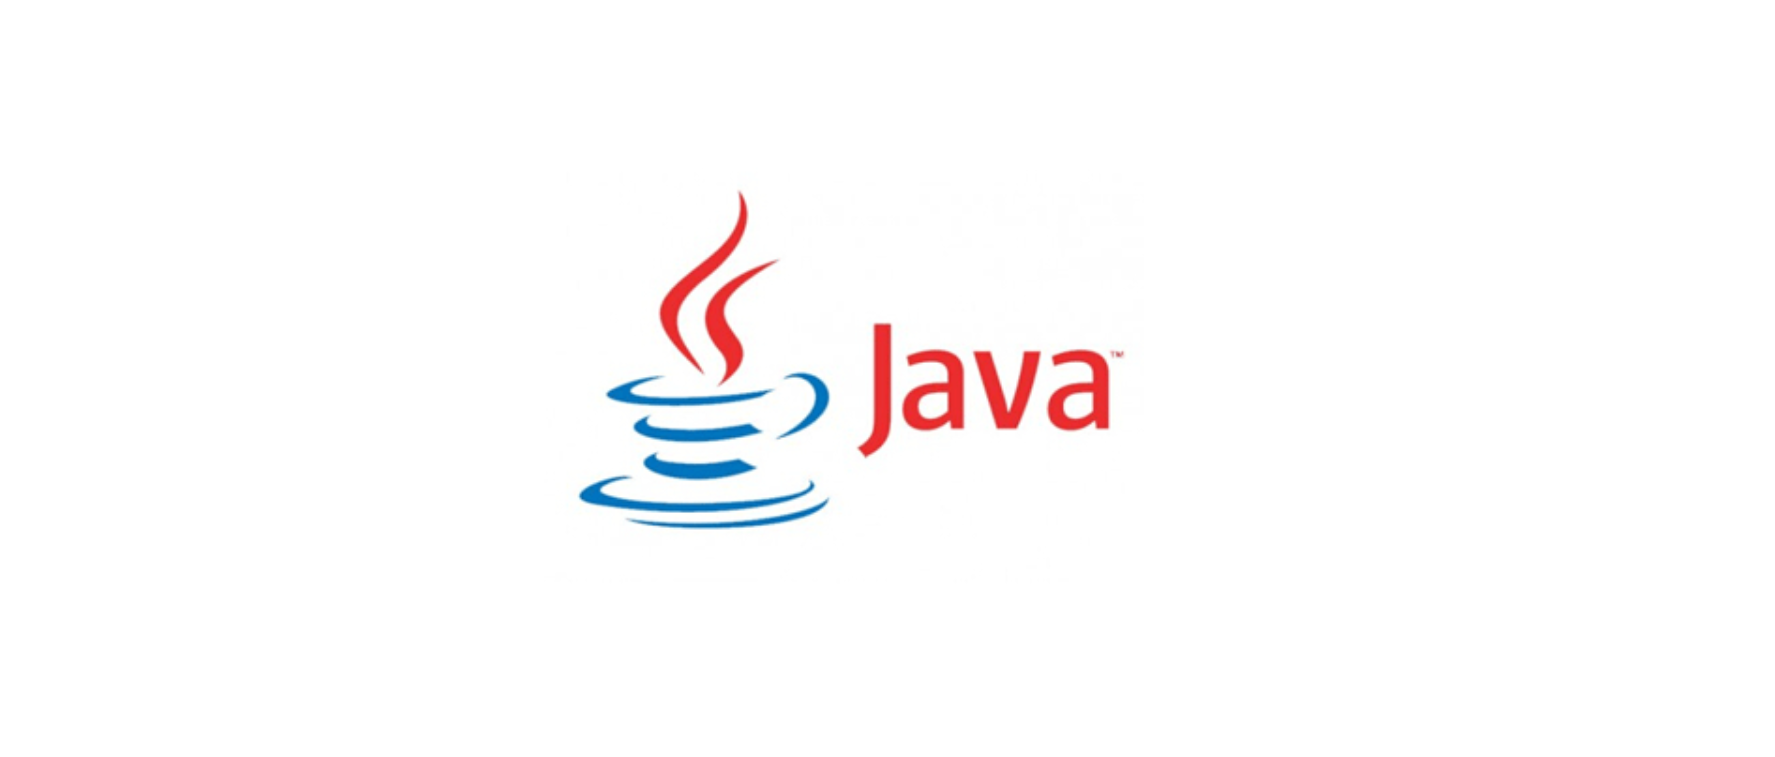 Java中表达式引擎工具